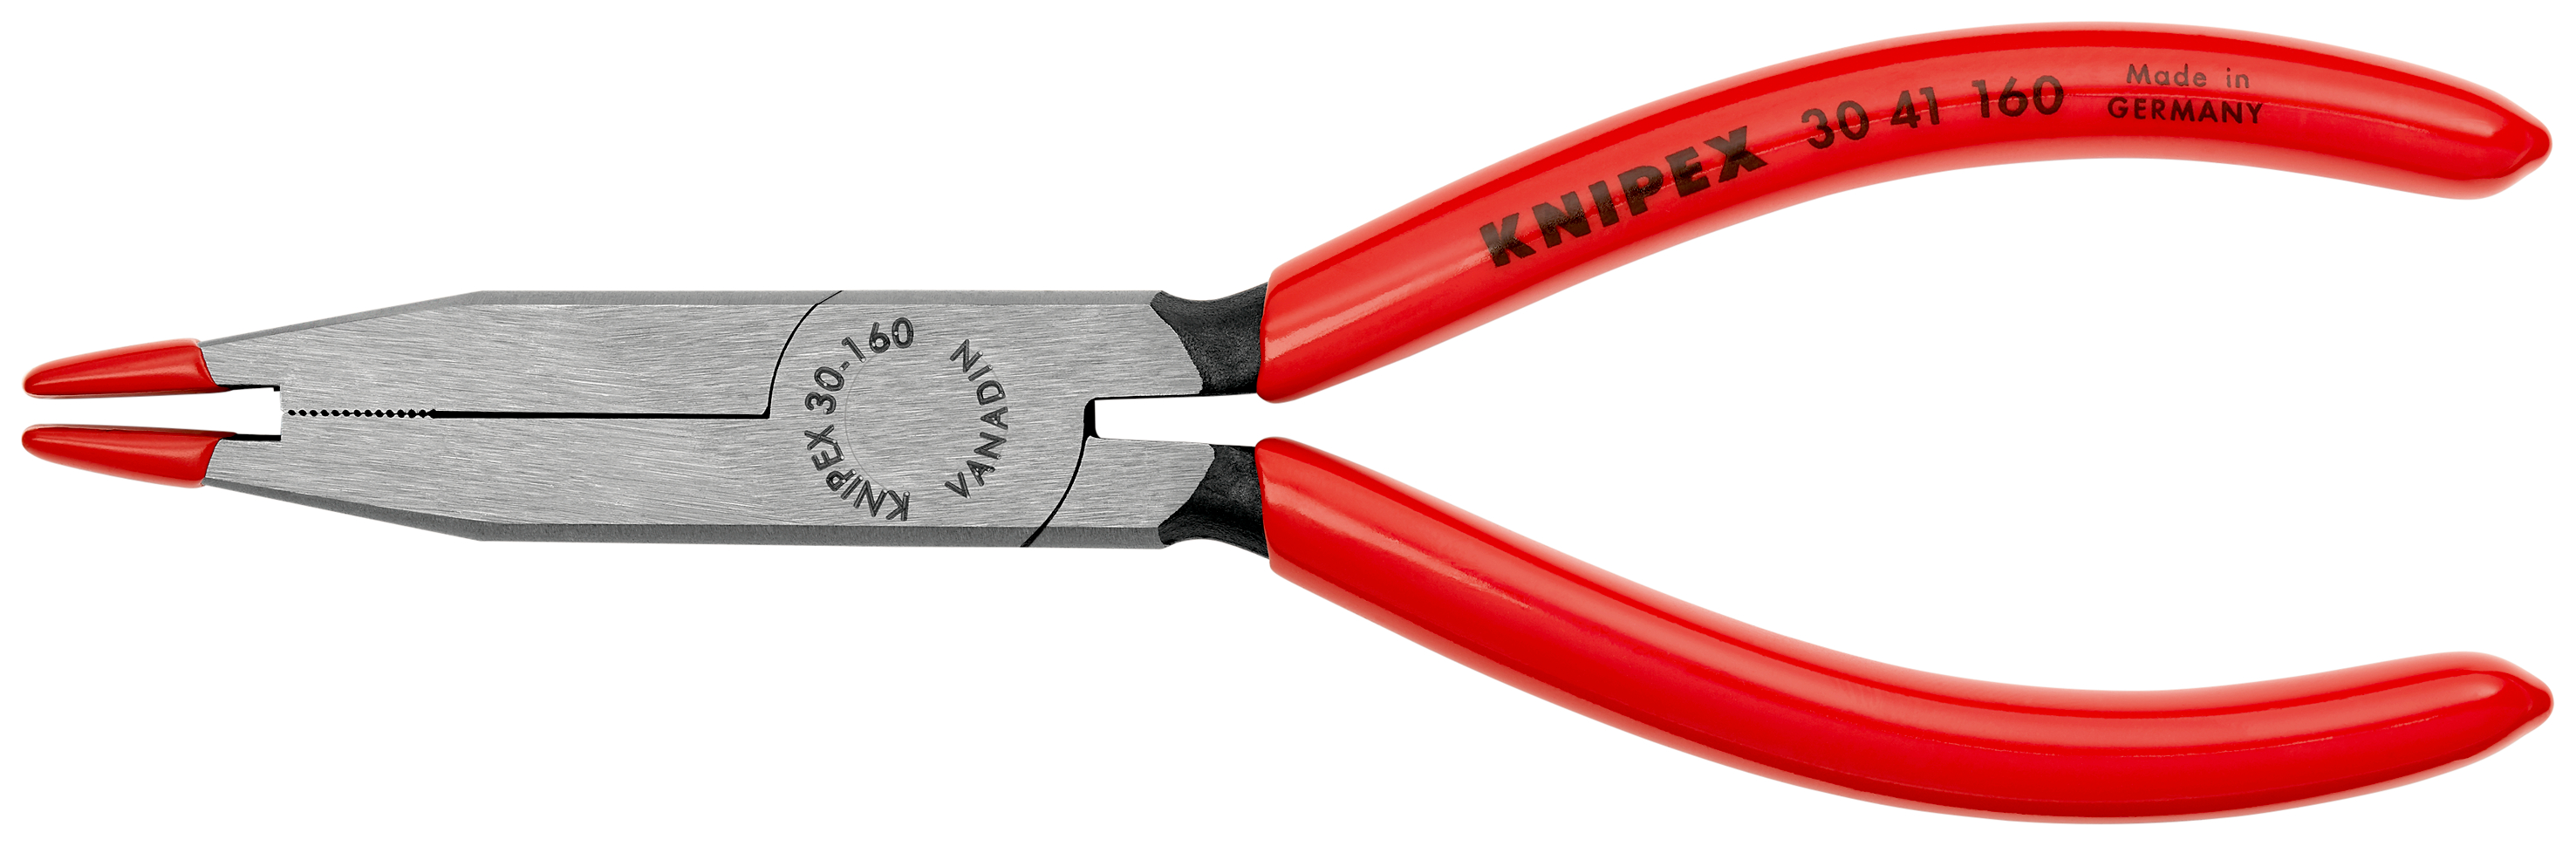 Knipex 3041160 Pentru montarea şi demontarea becurilor cu soclu din sticlă, lungime 160 mm